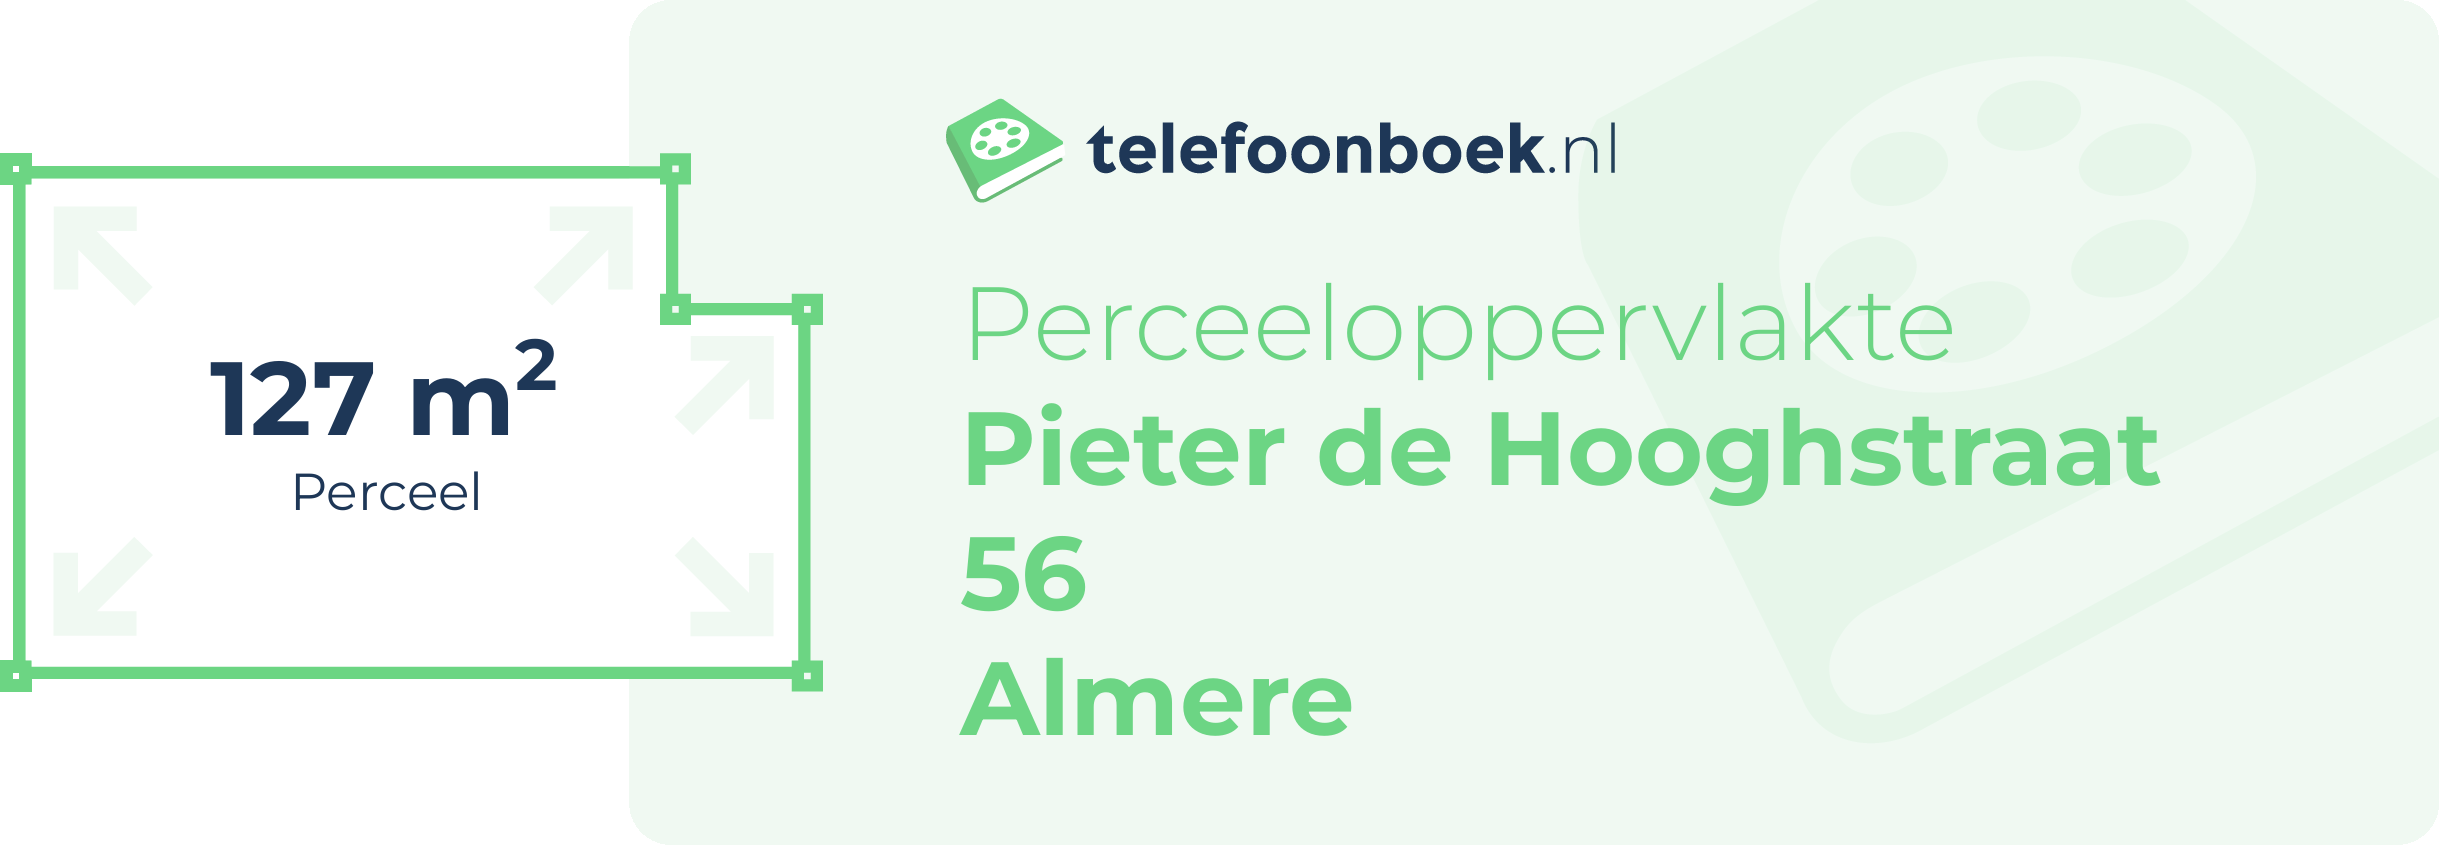 Perceeloppervlakte Pieter De Hooghstraat 56 Almere